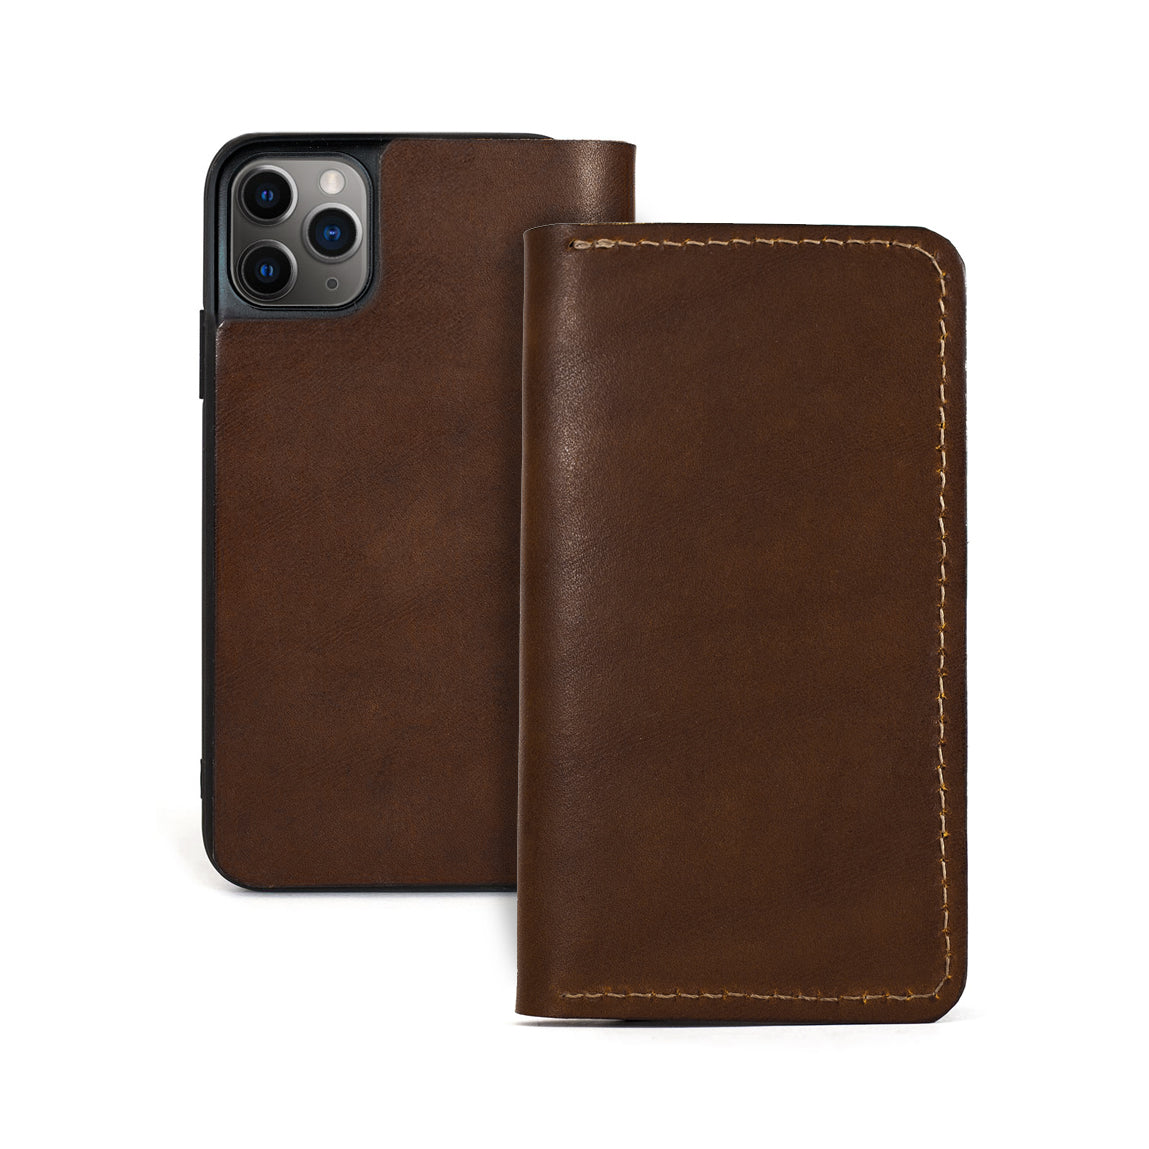 Folio iPhone 11 Pro Max leather case